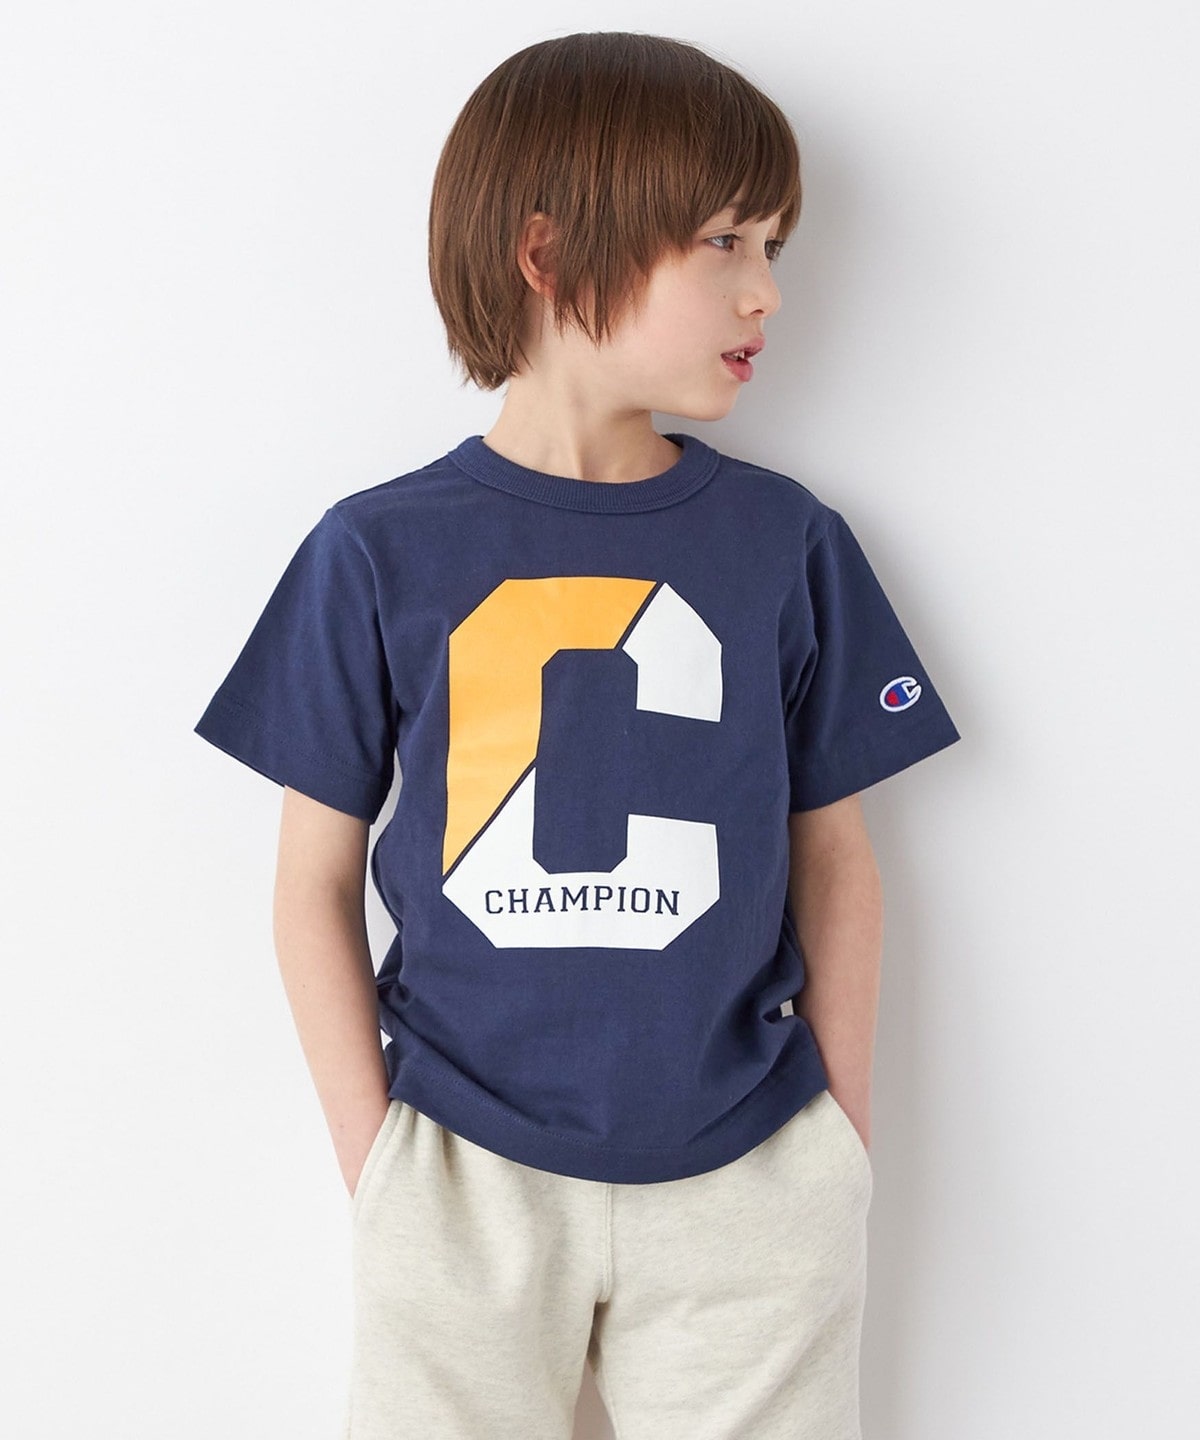 柔らかな質感の champion チャンピオン キッズ ロンT 子供服 ボストン Tシャツ